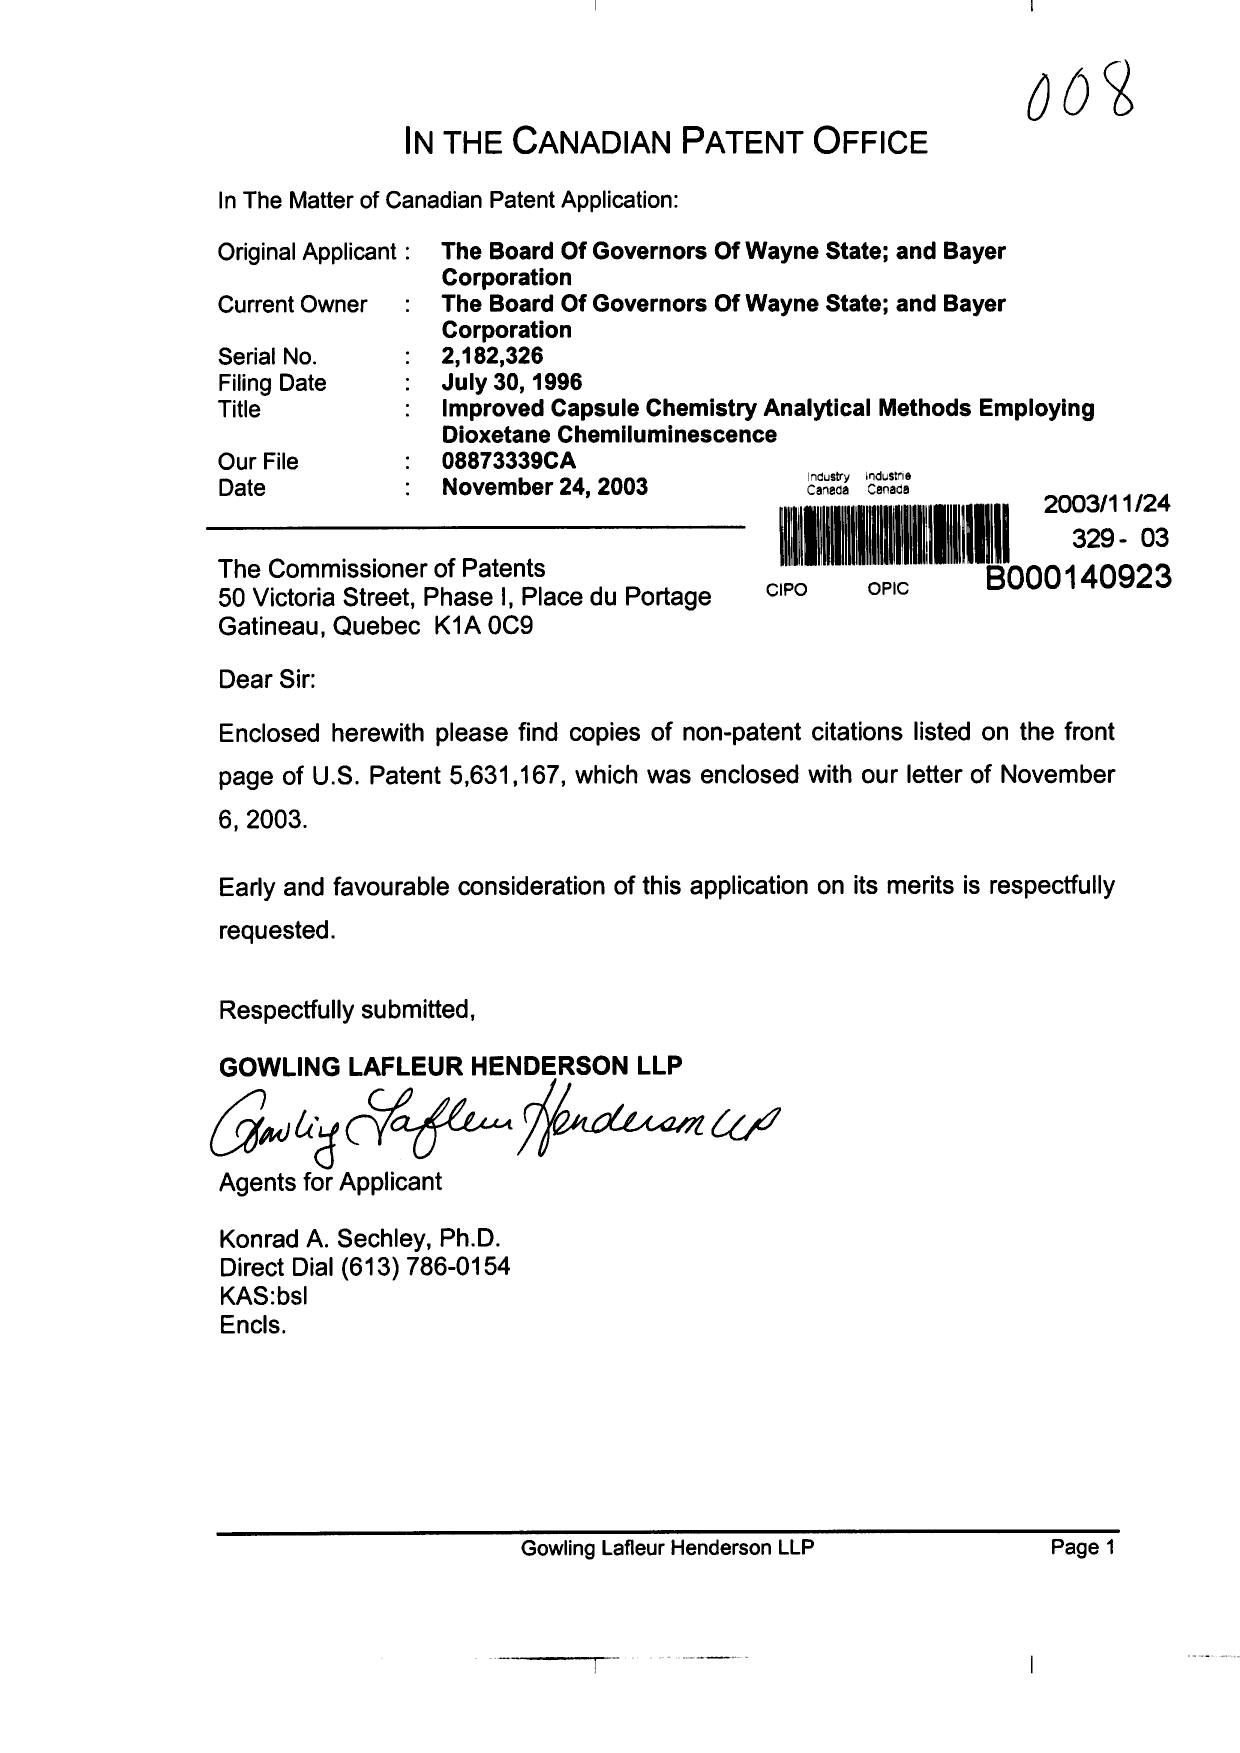 Document de brevet canadien 2182326. Poursuite-Amendment 20031124. Image 1 de 1